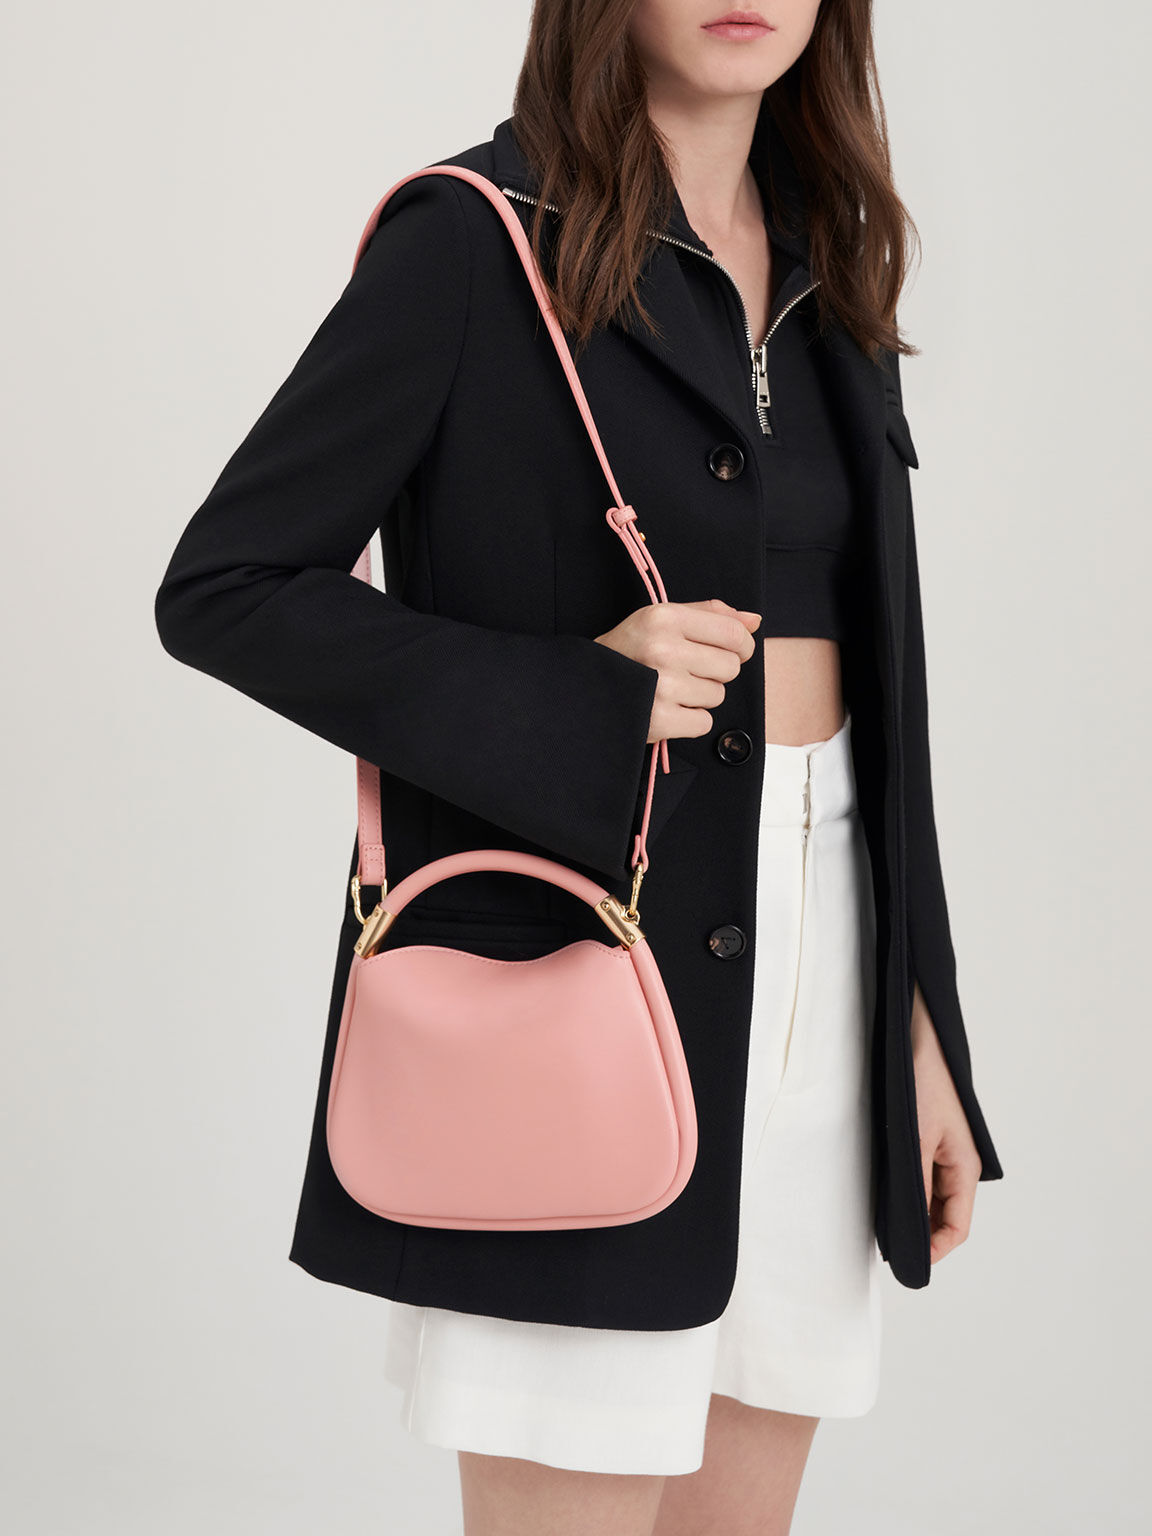 Mini Lara Hobo Bag, Light Pink, hi-res